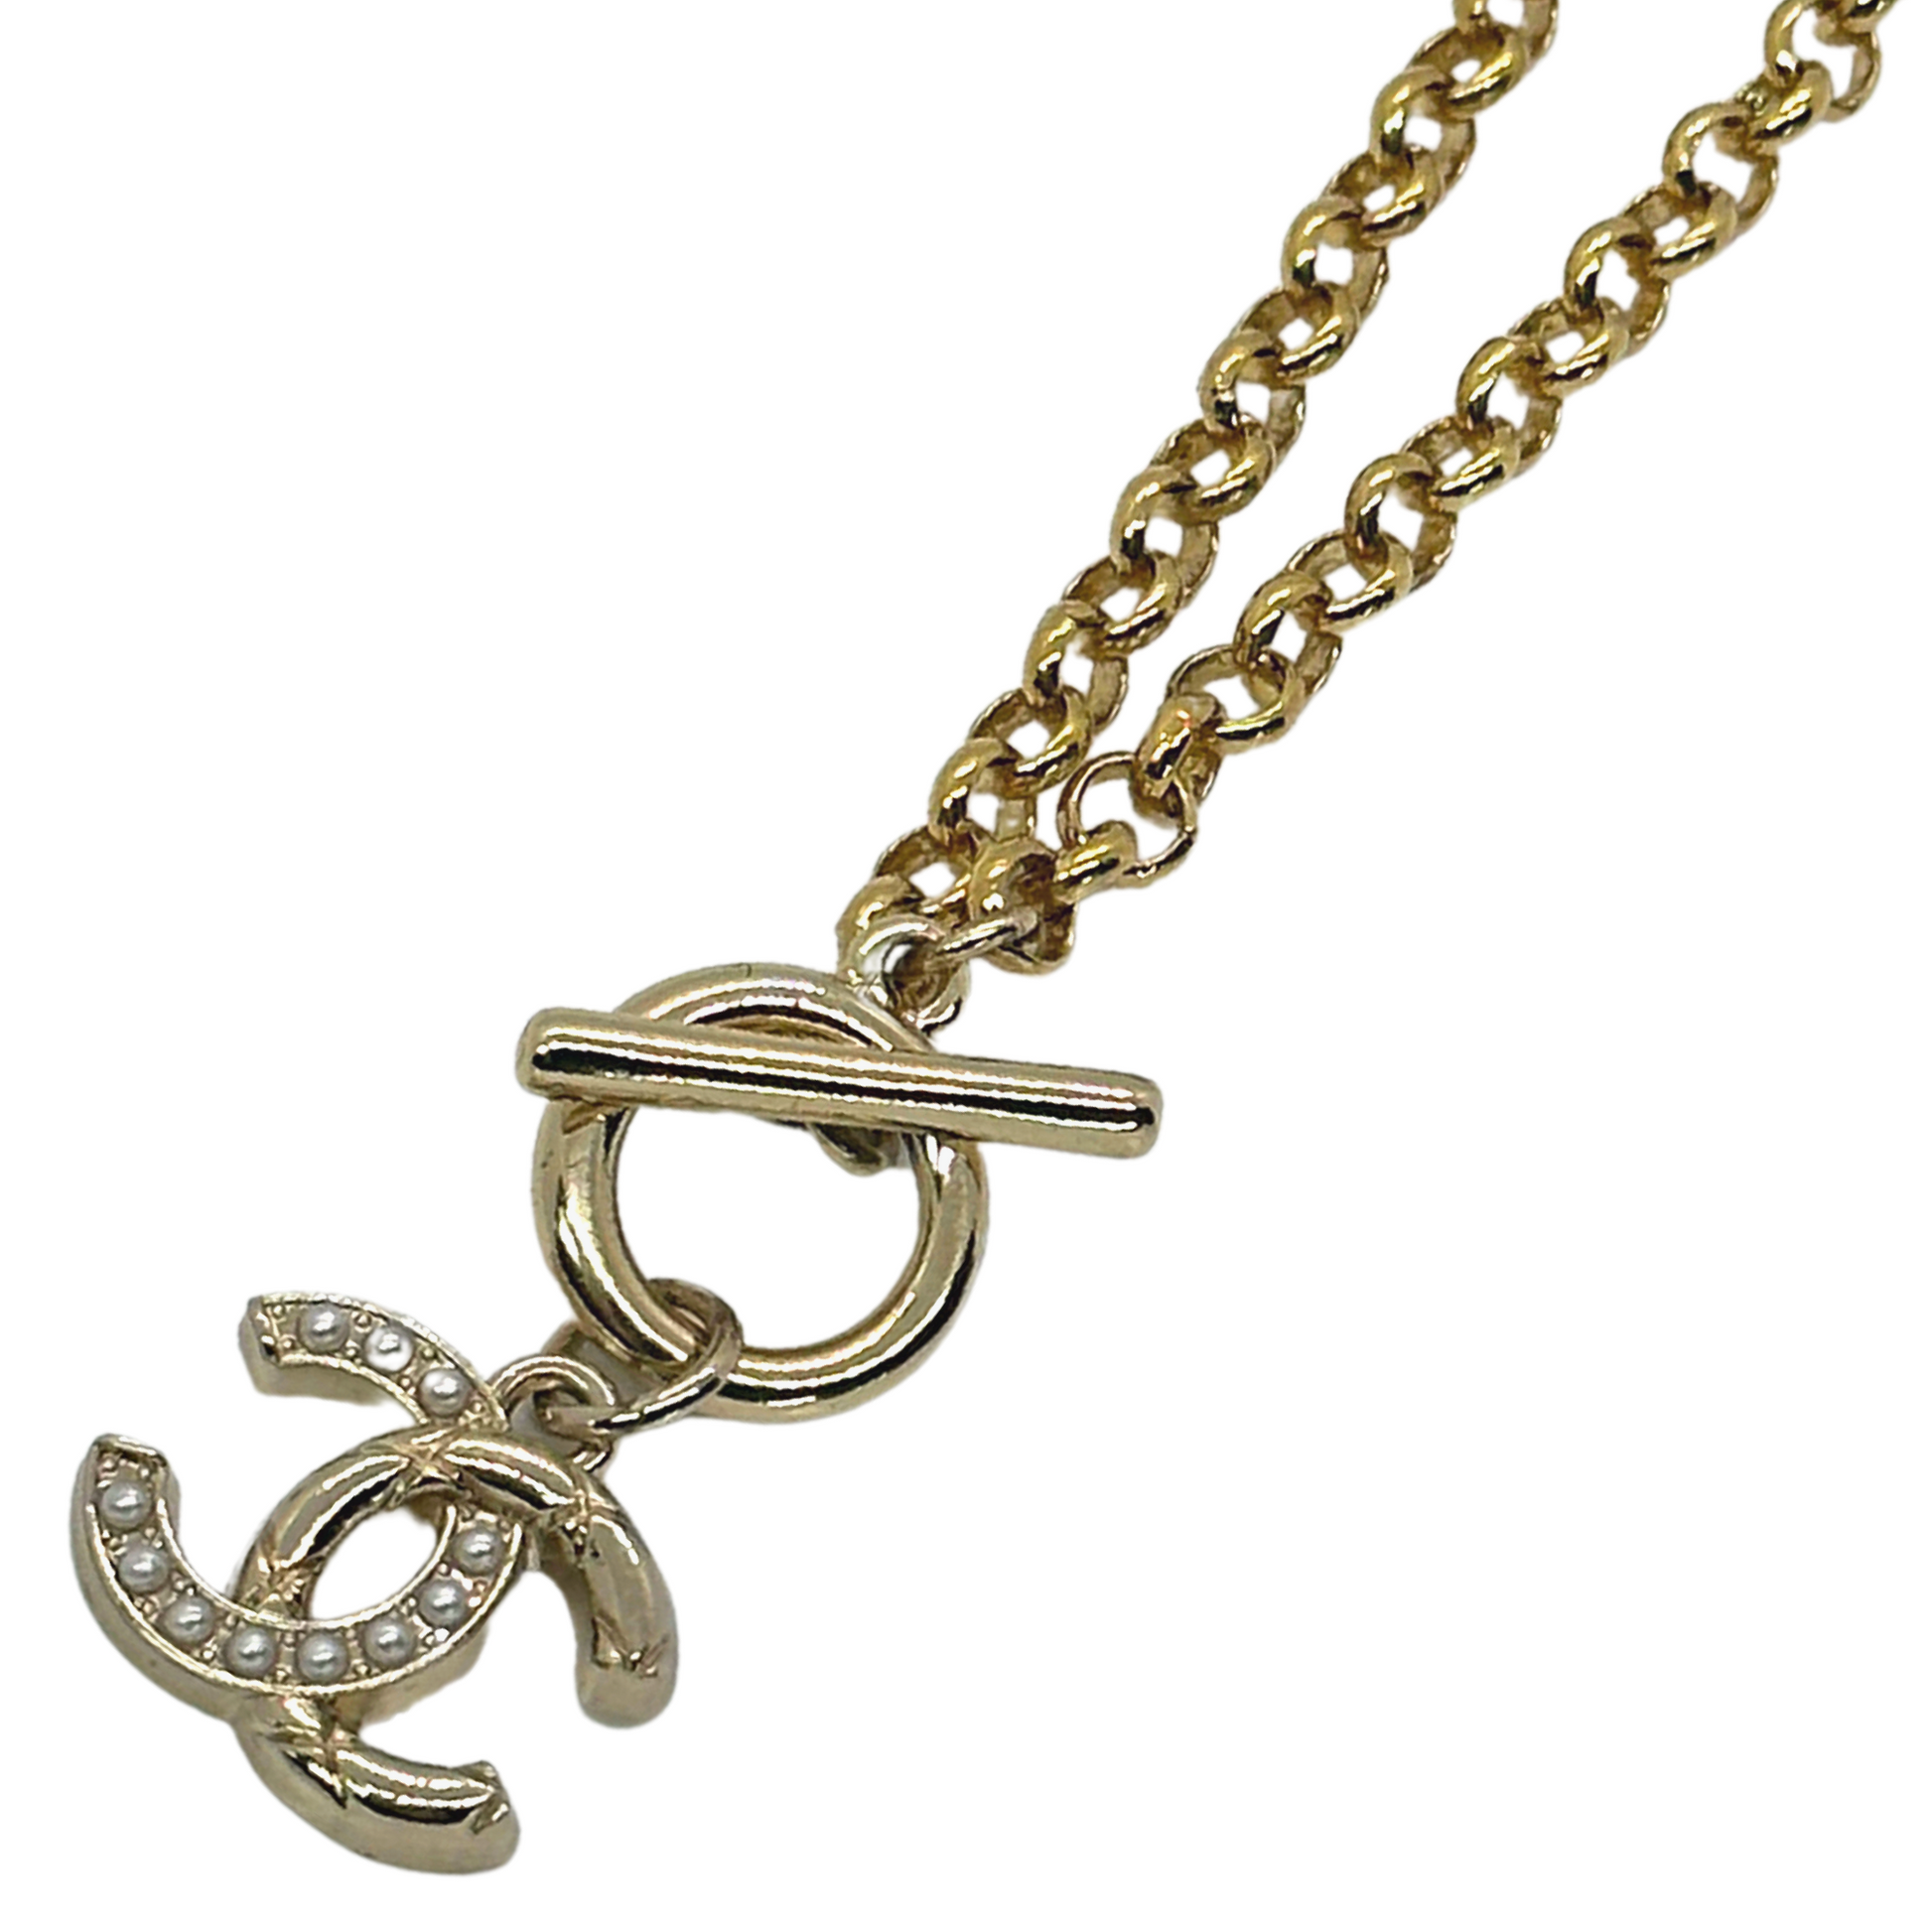 Chanel Gold-tone Cc Square Rhinestone Necklace in Metallic